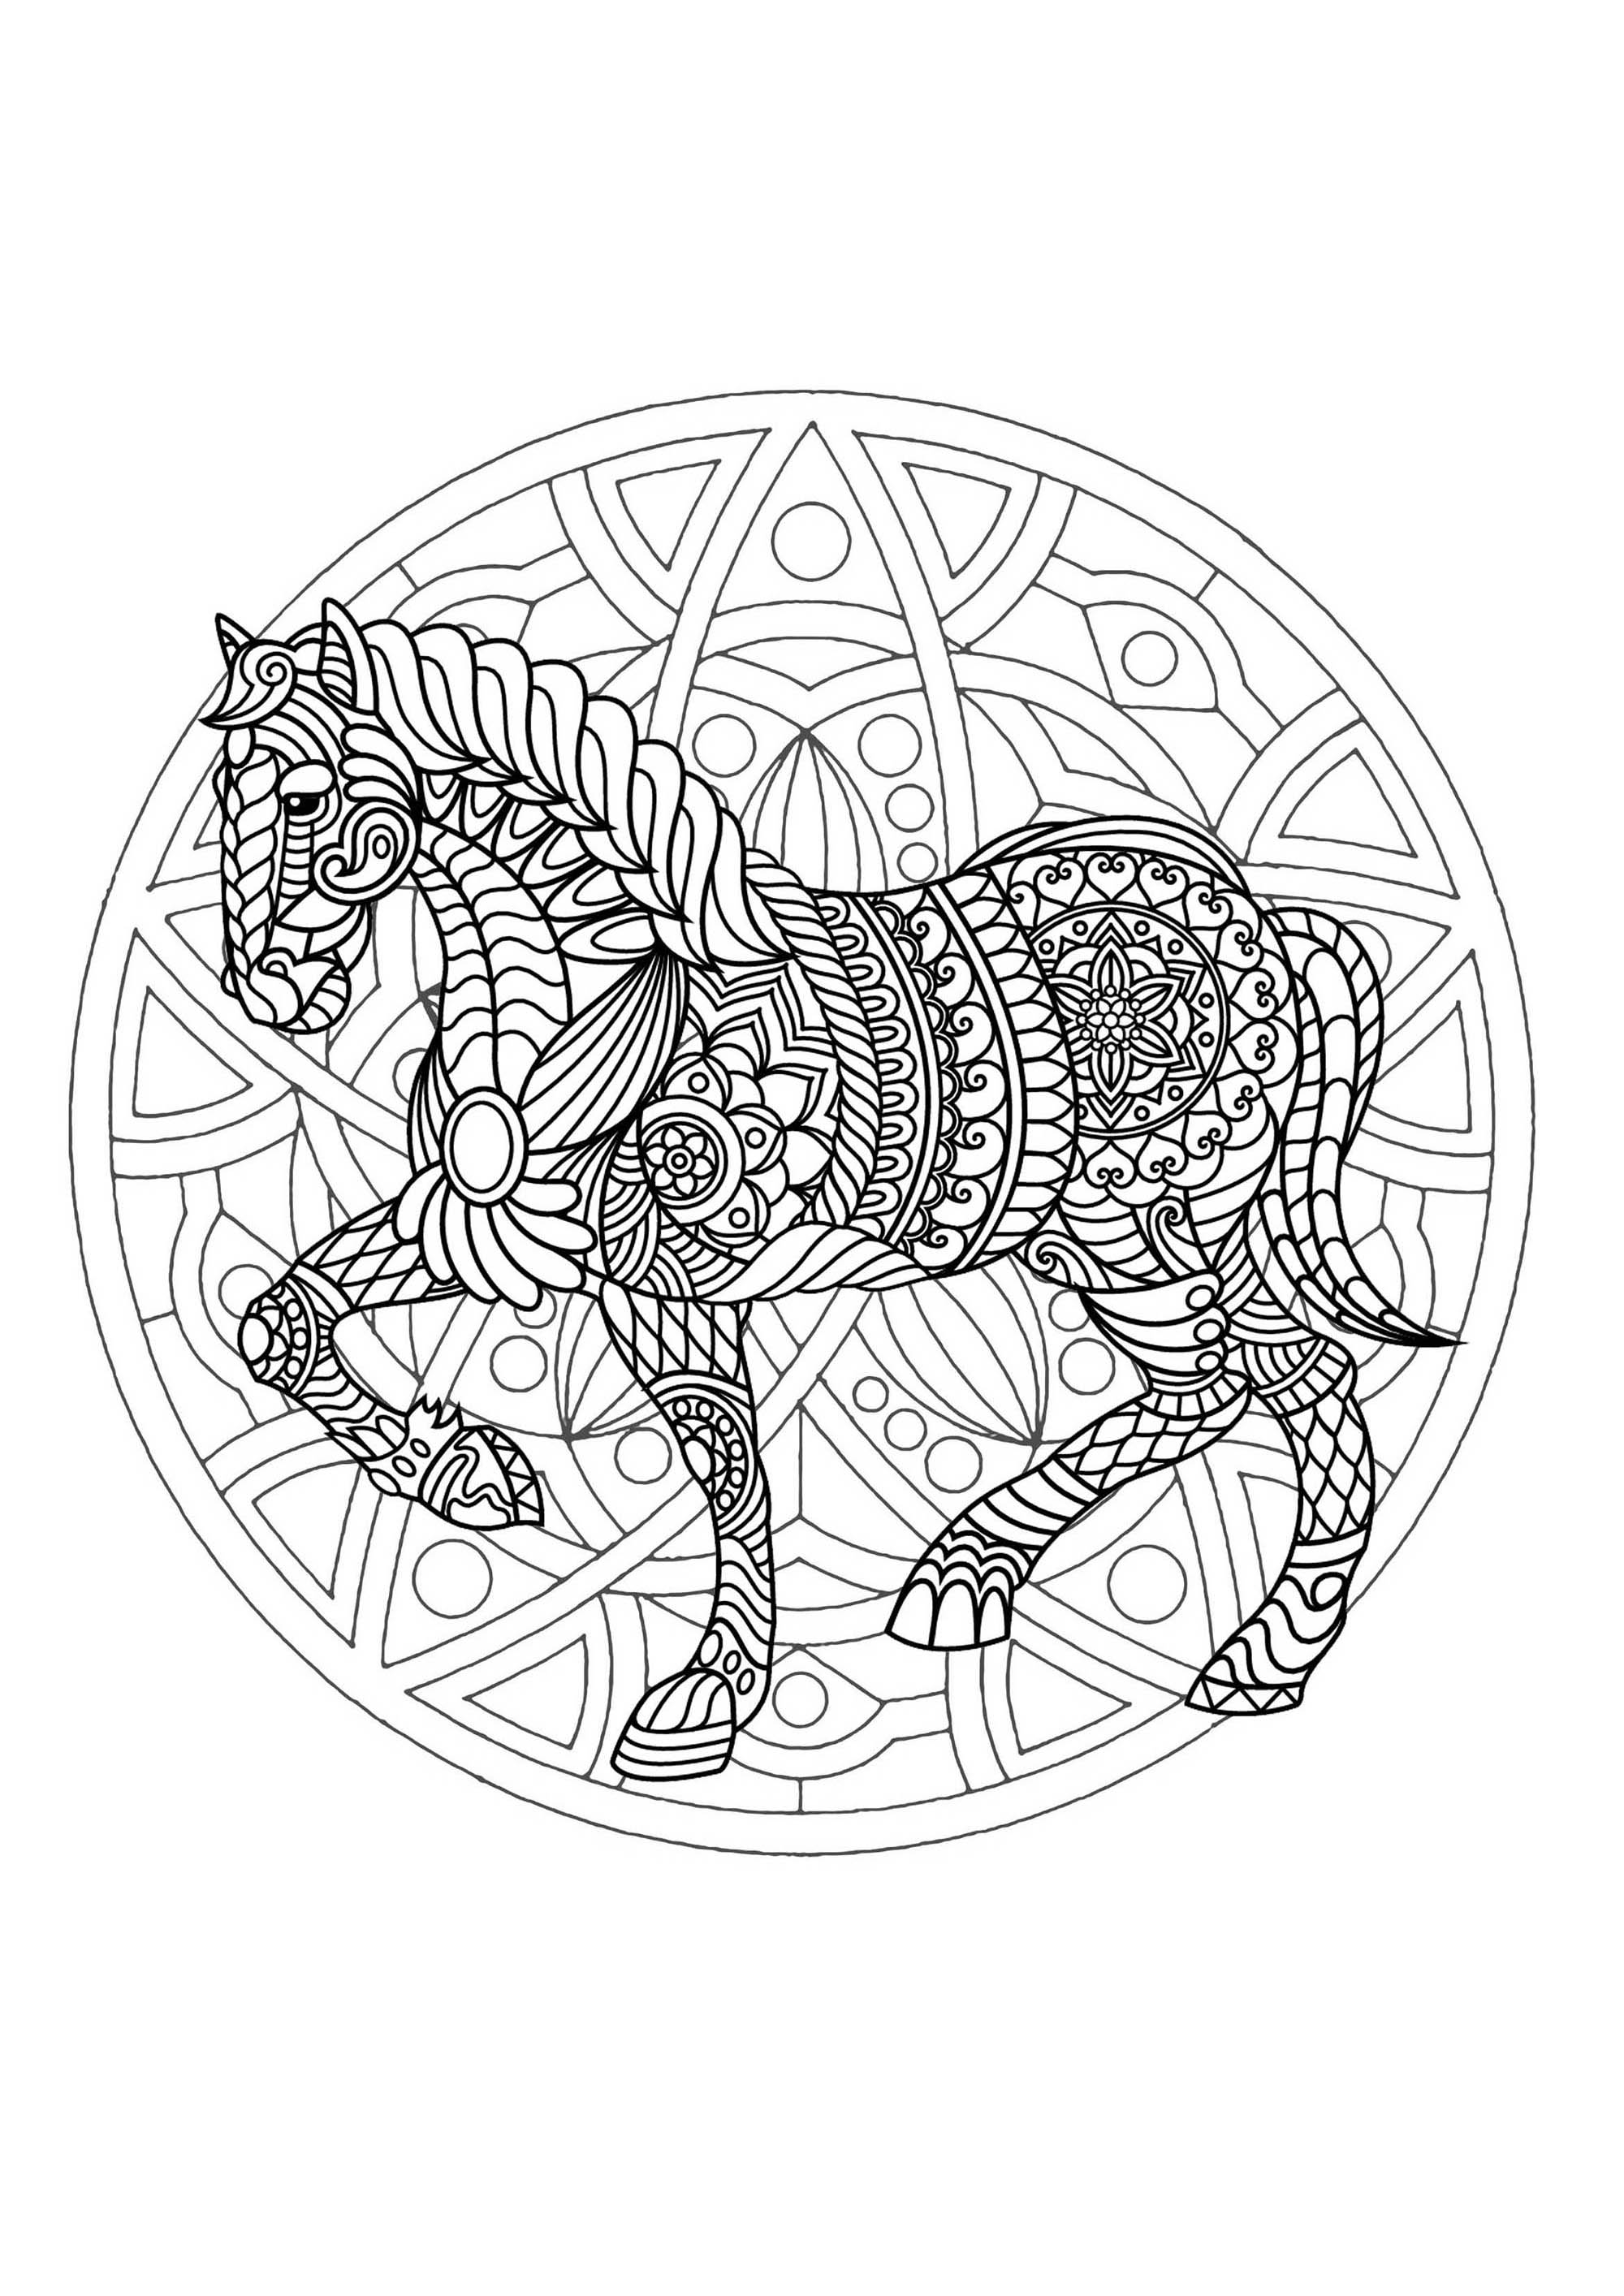 Una magnífica página para colorear de Mandala con un caballo, de gran calidad y originalidad. De ti depende elegir los colores más apropiados.